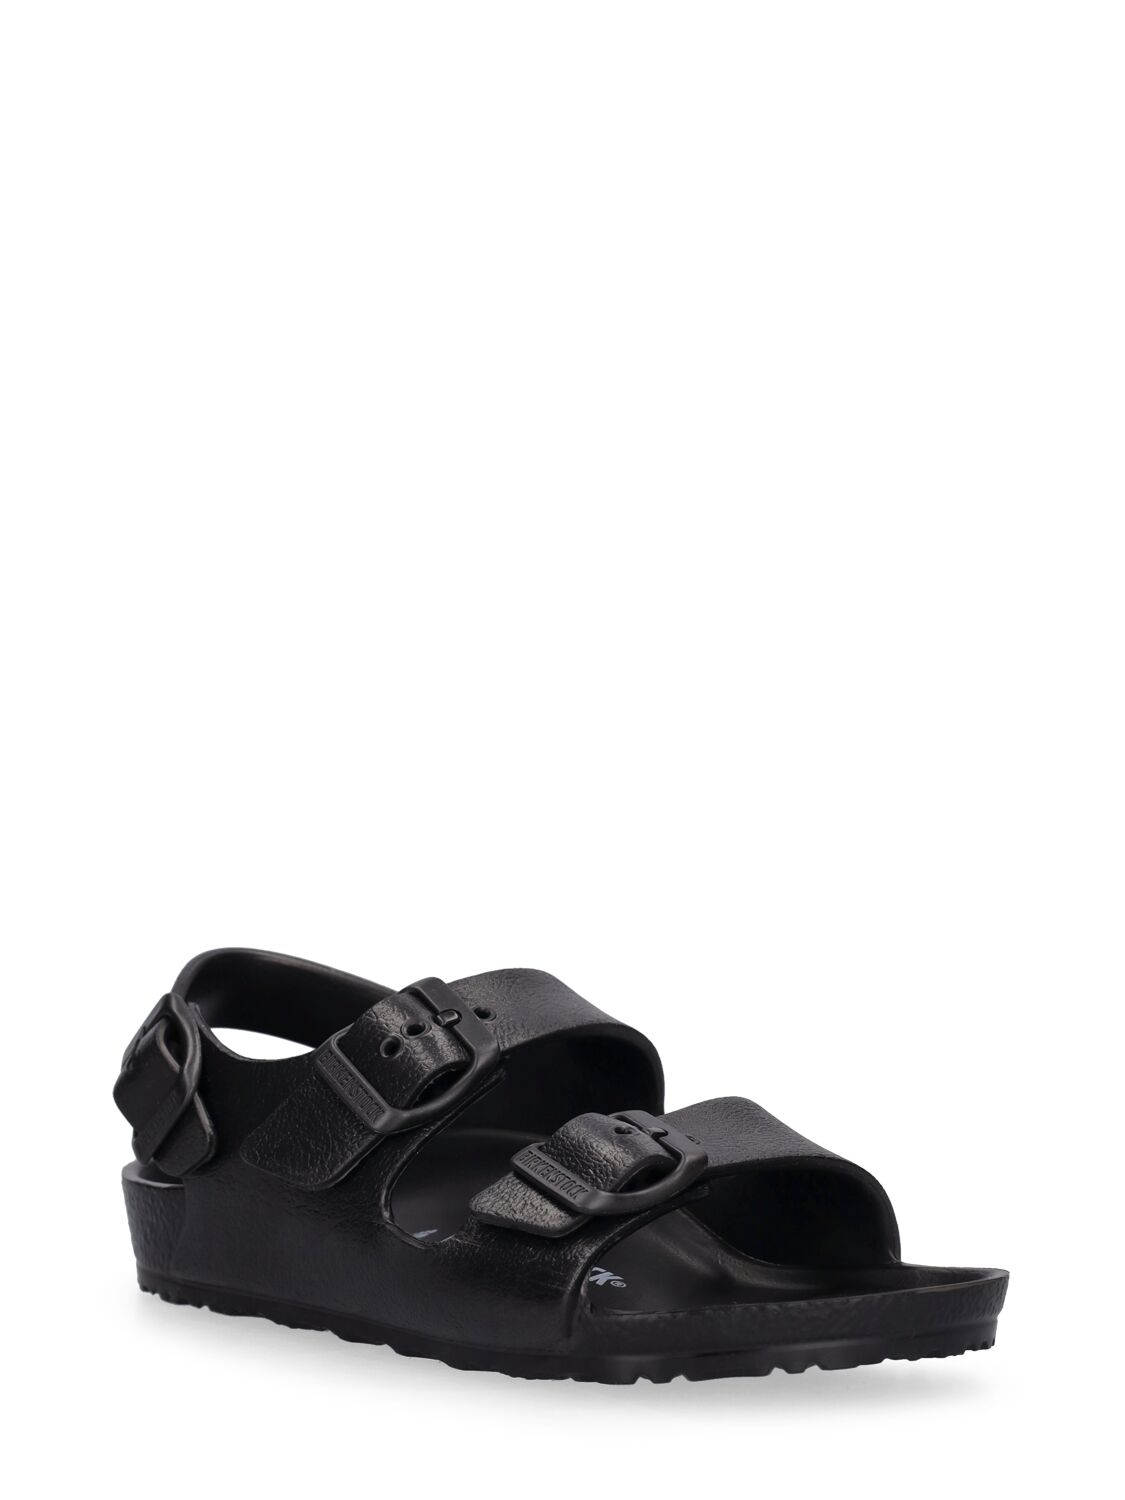 Shop Birkenstock Milano Eva Sandals In Black